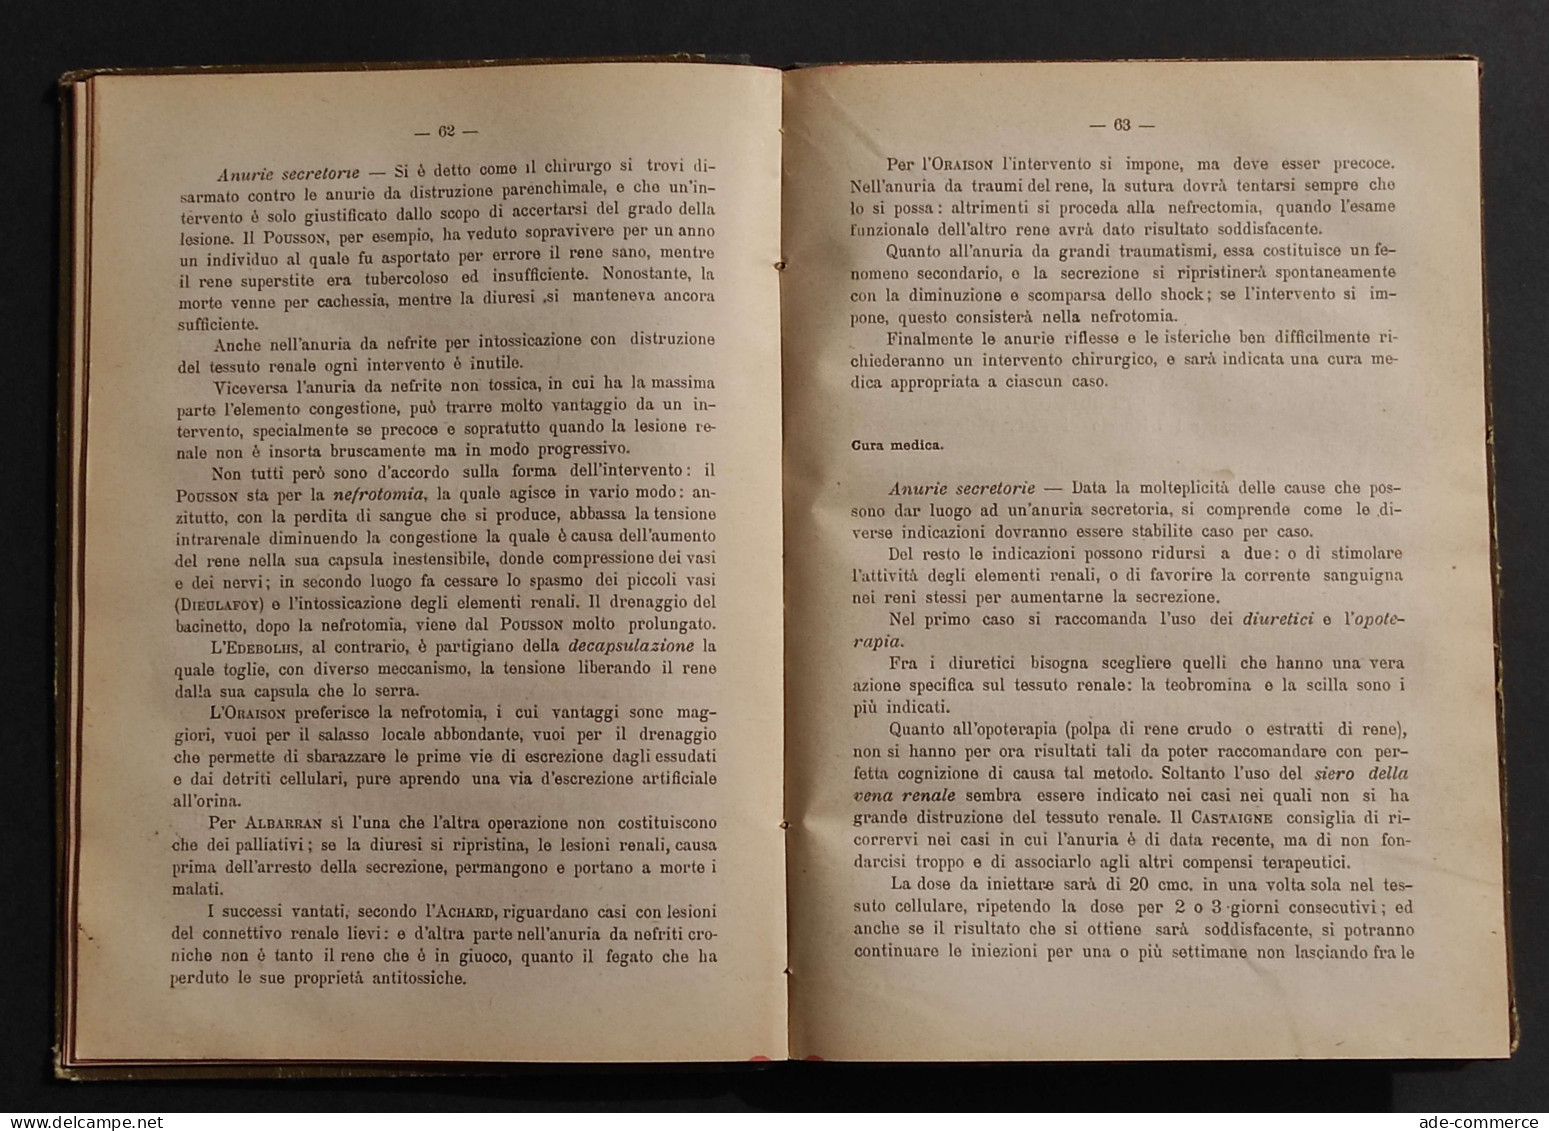 Il Progresso Terapeutico - Annuario Scientifico - A. Gagliardi - 1913 - Medecine, Psychology